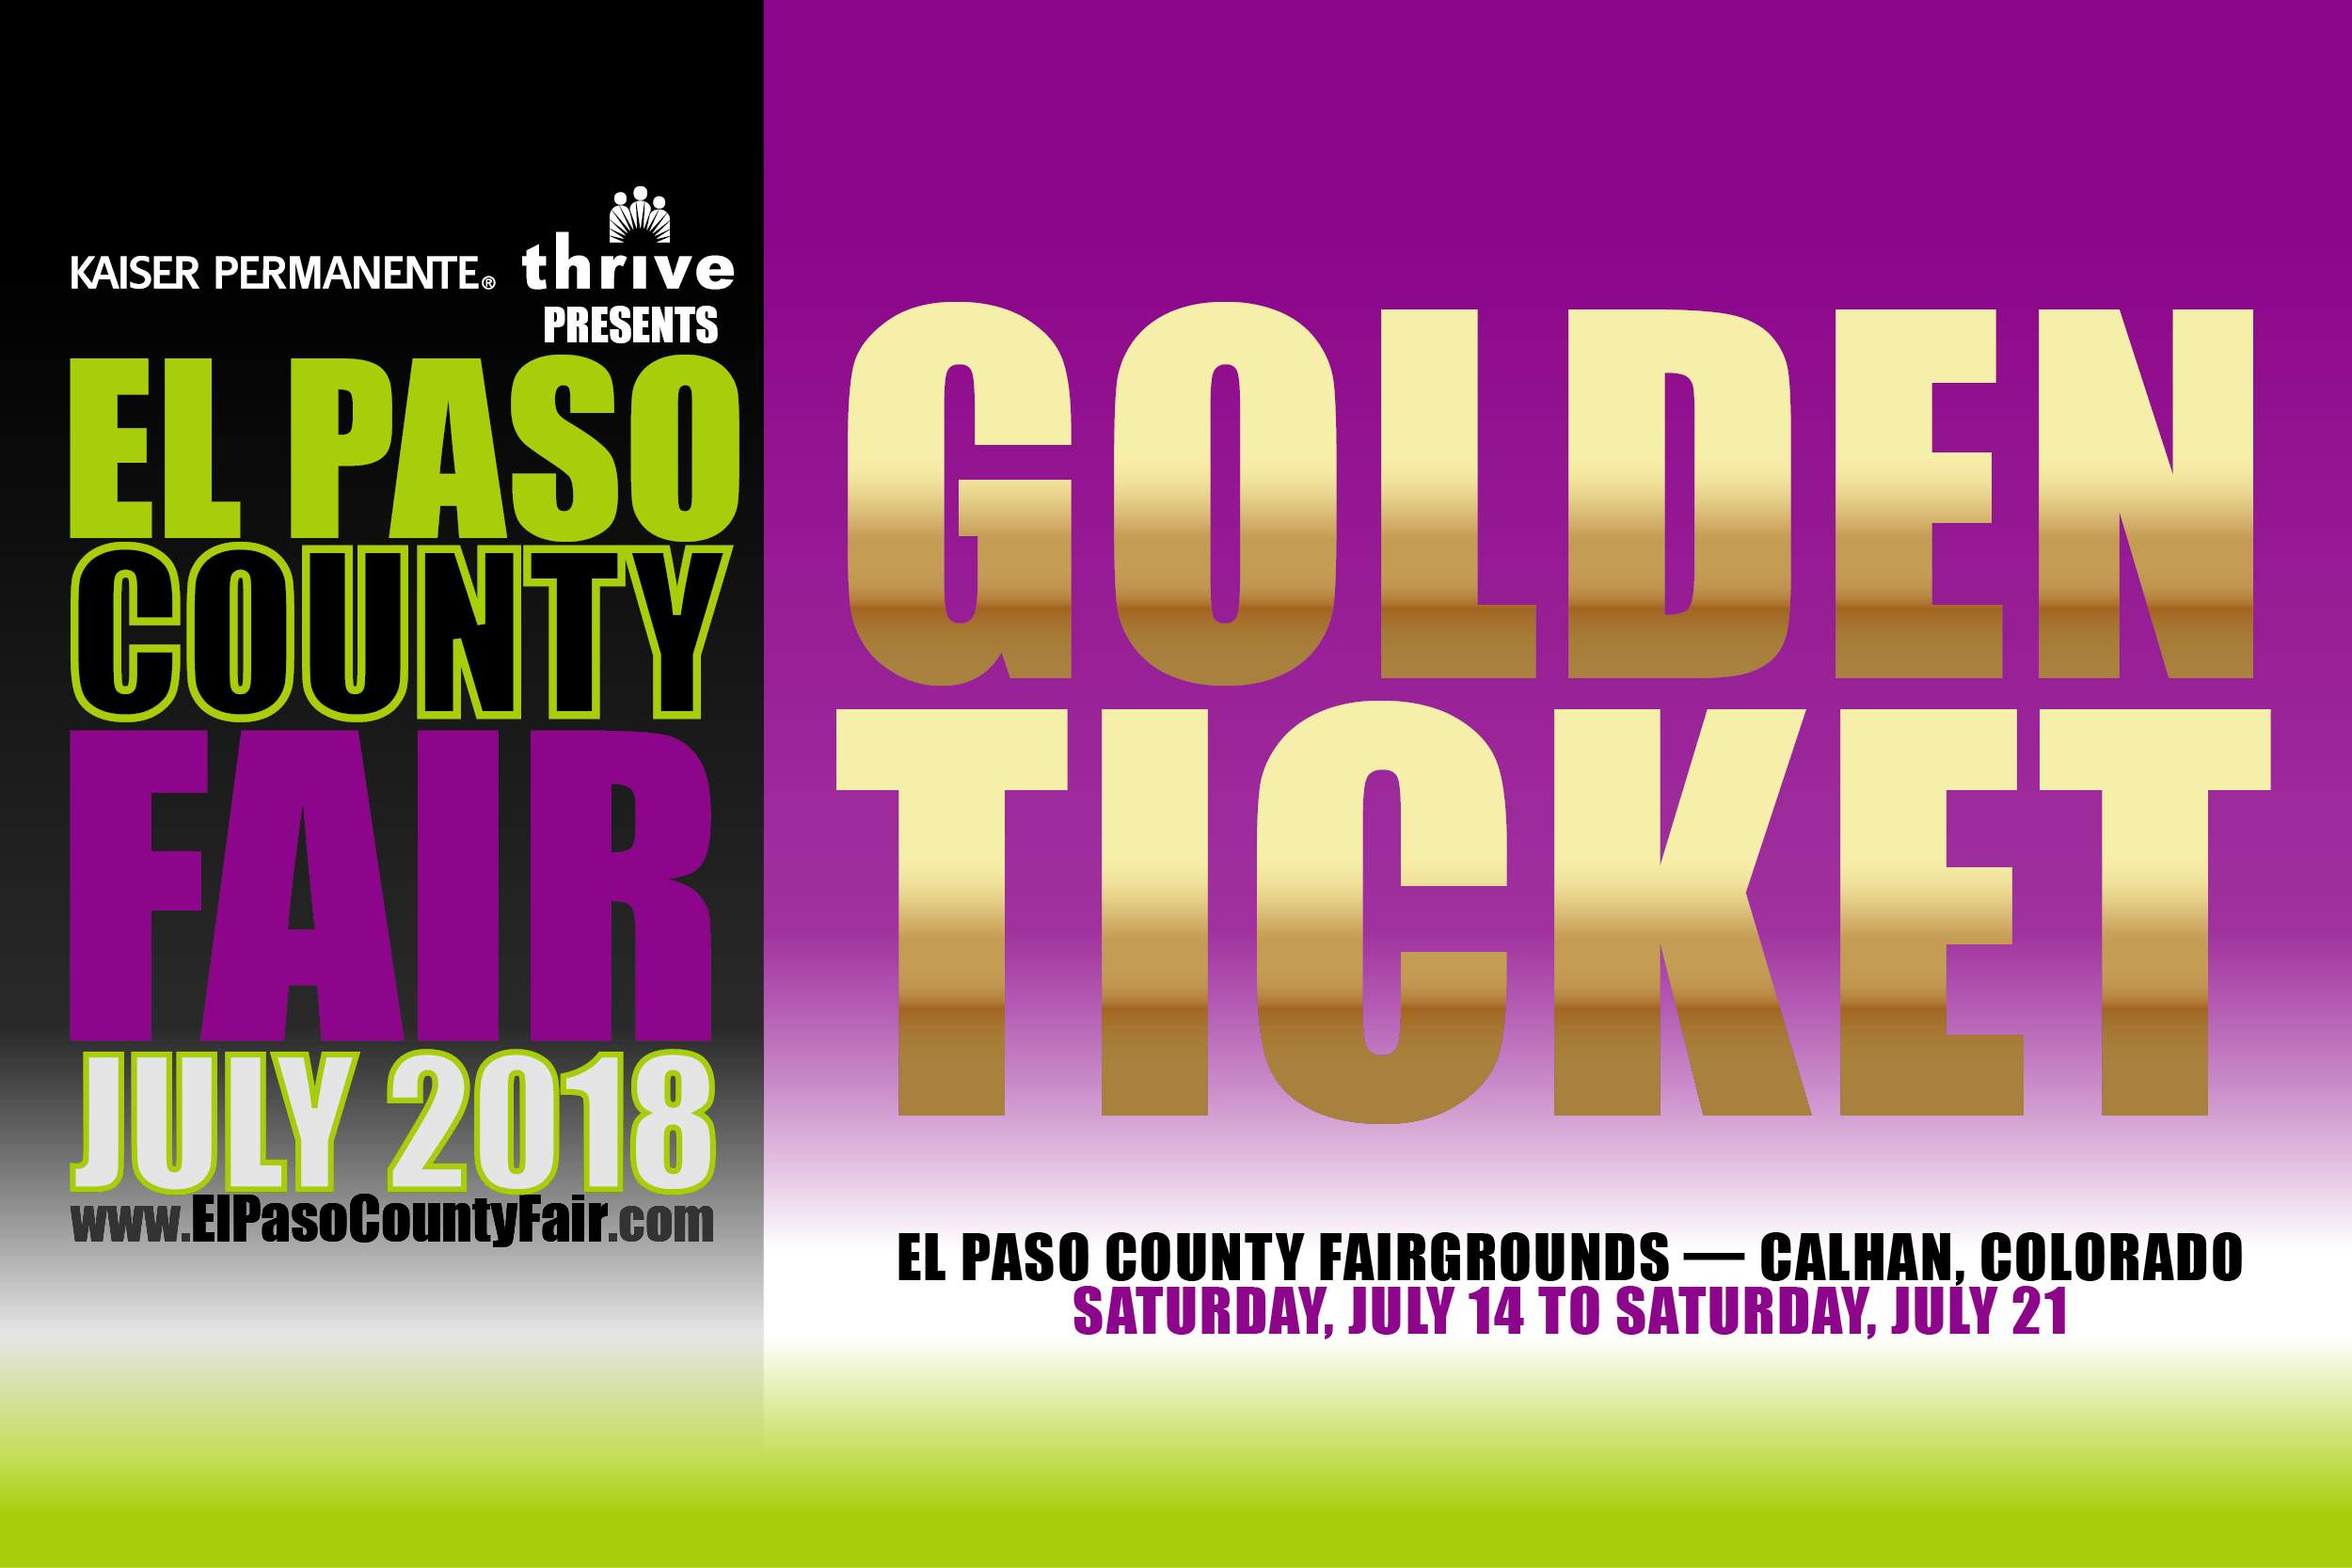 Buy Your Golden Ticket for the El Paso County Fair El Paso County